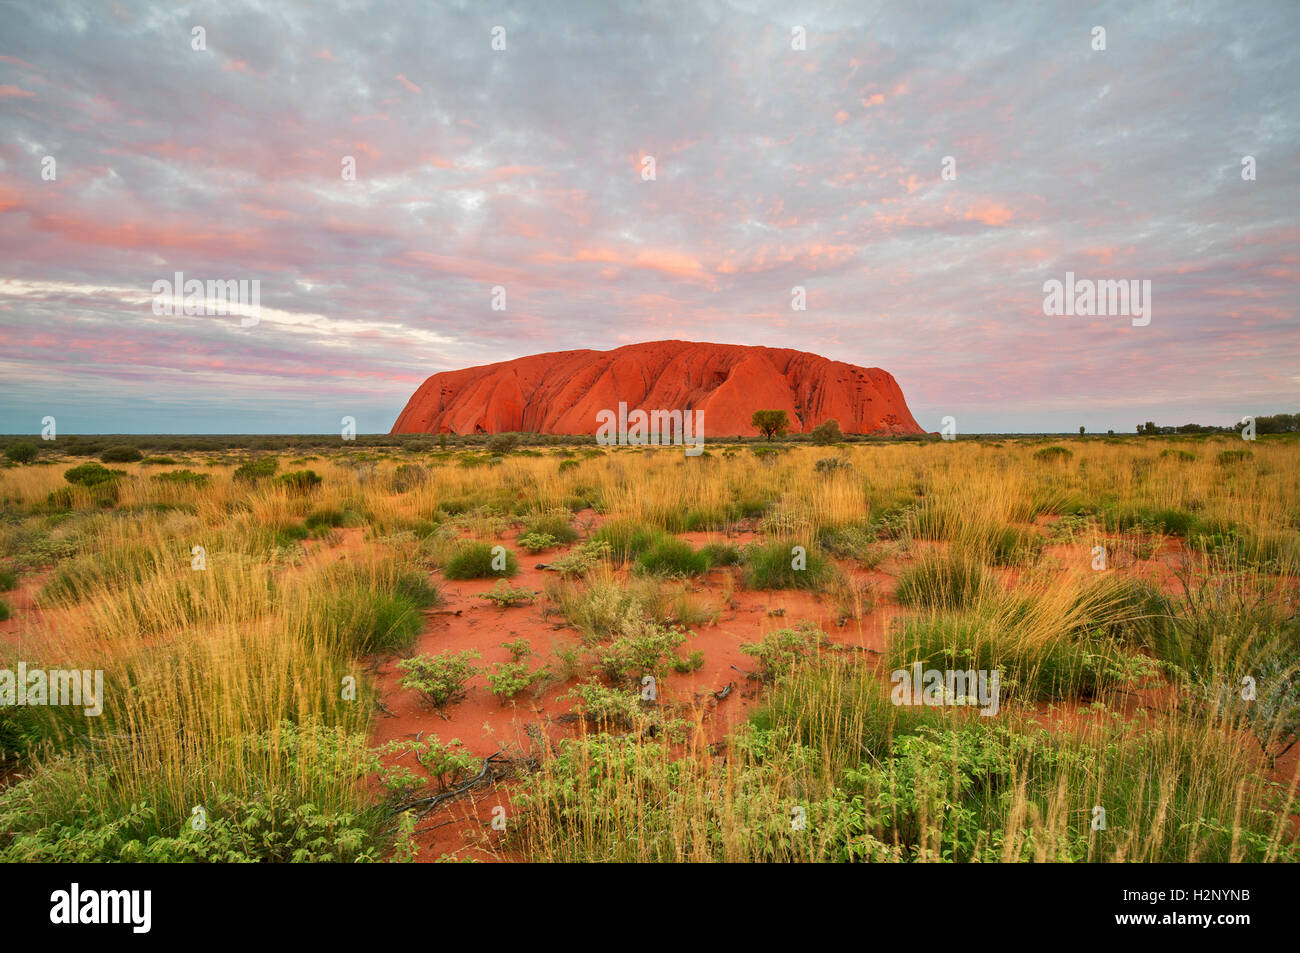 Alice springs australia immagini e fotografie stock ad alta risoluzione -  Alamy